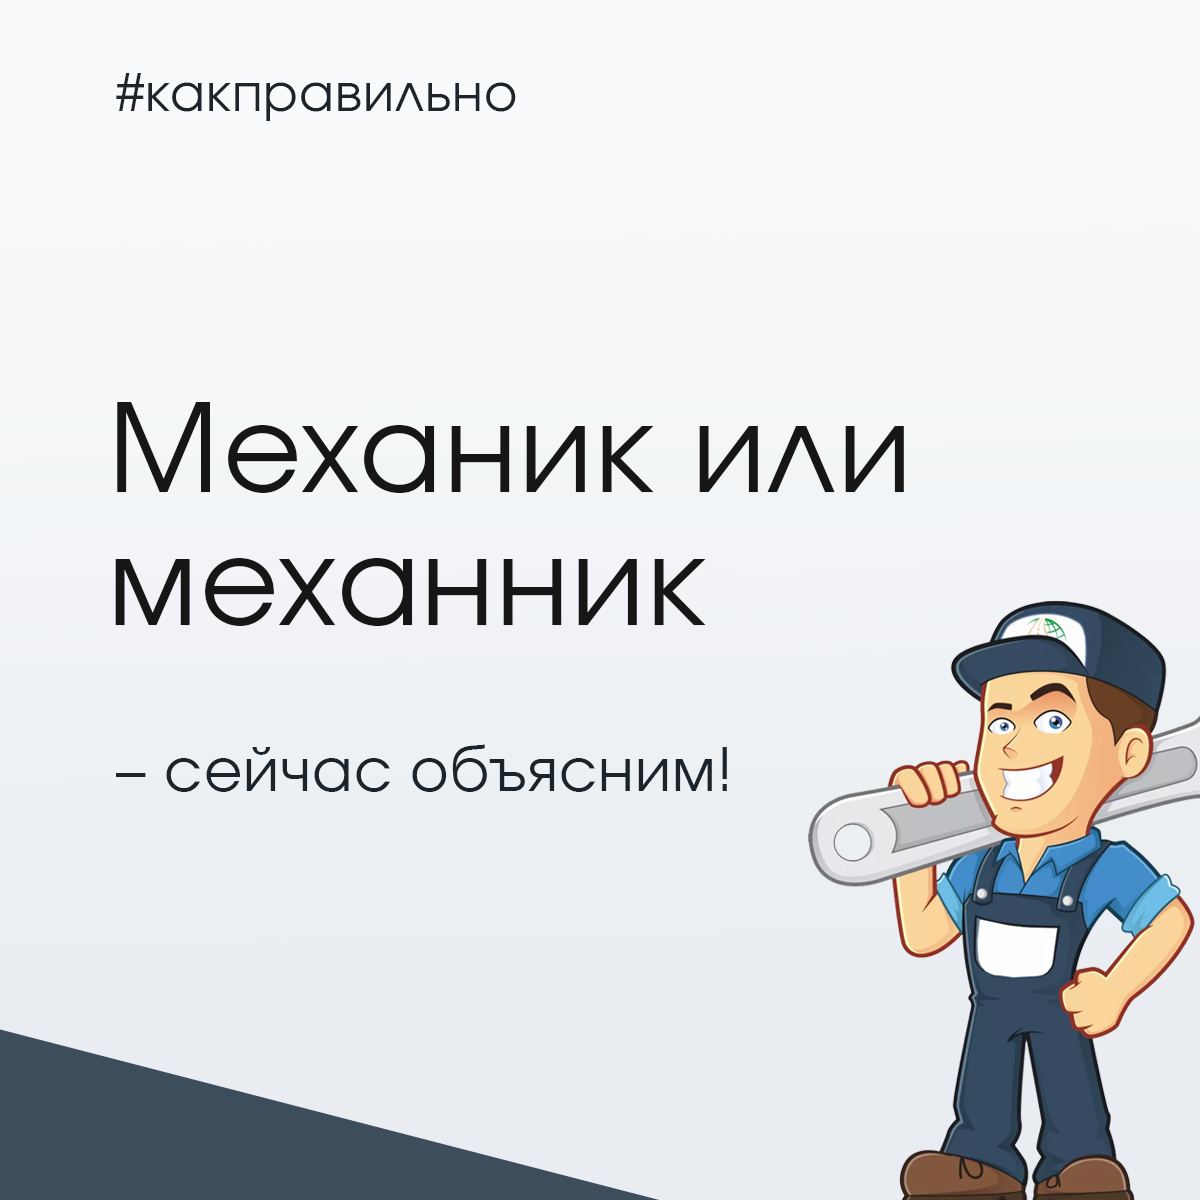 Установка русского языка на телеграмм фото 64